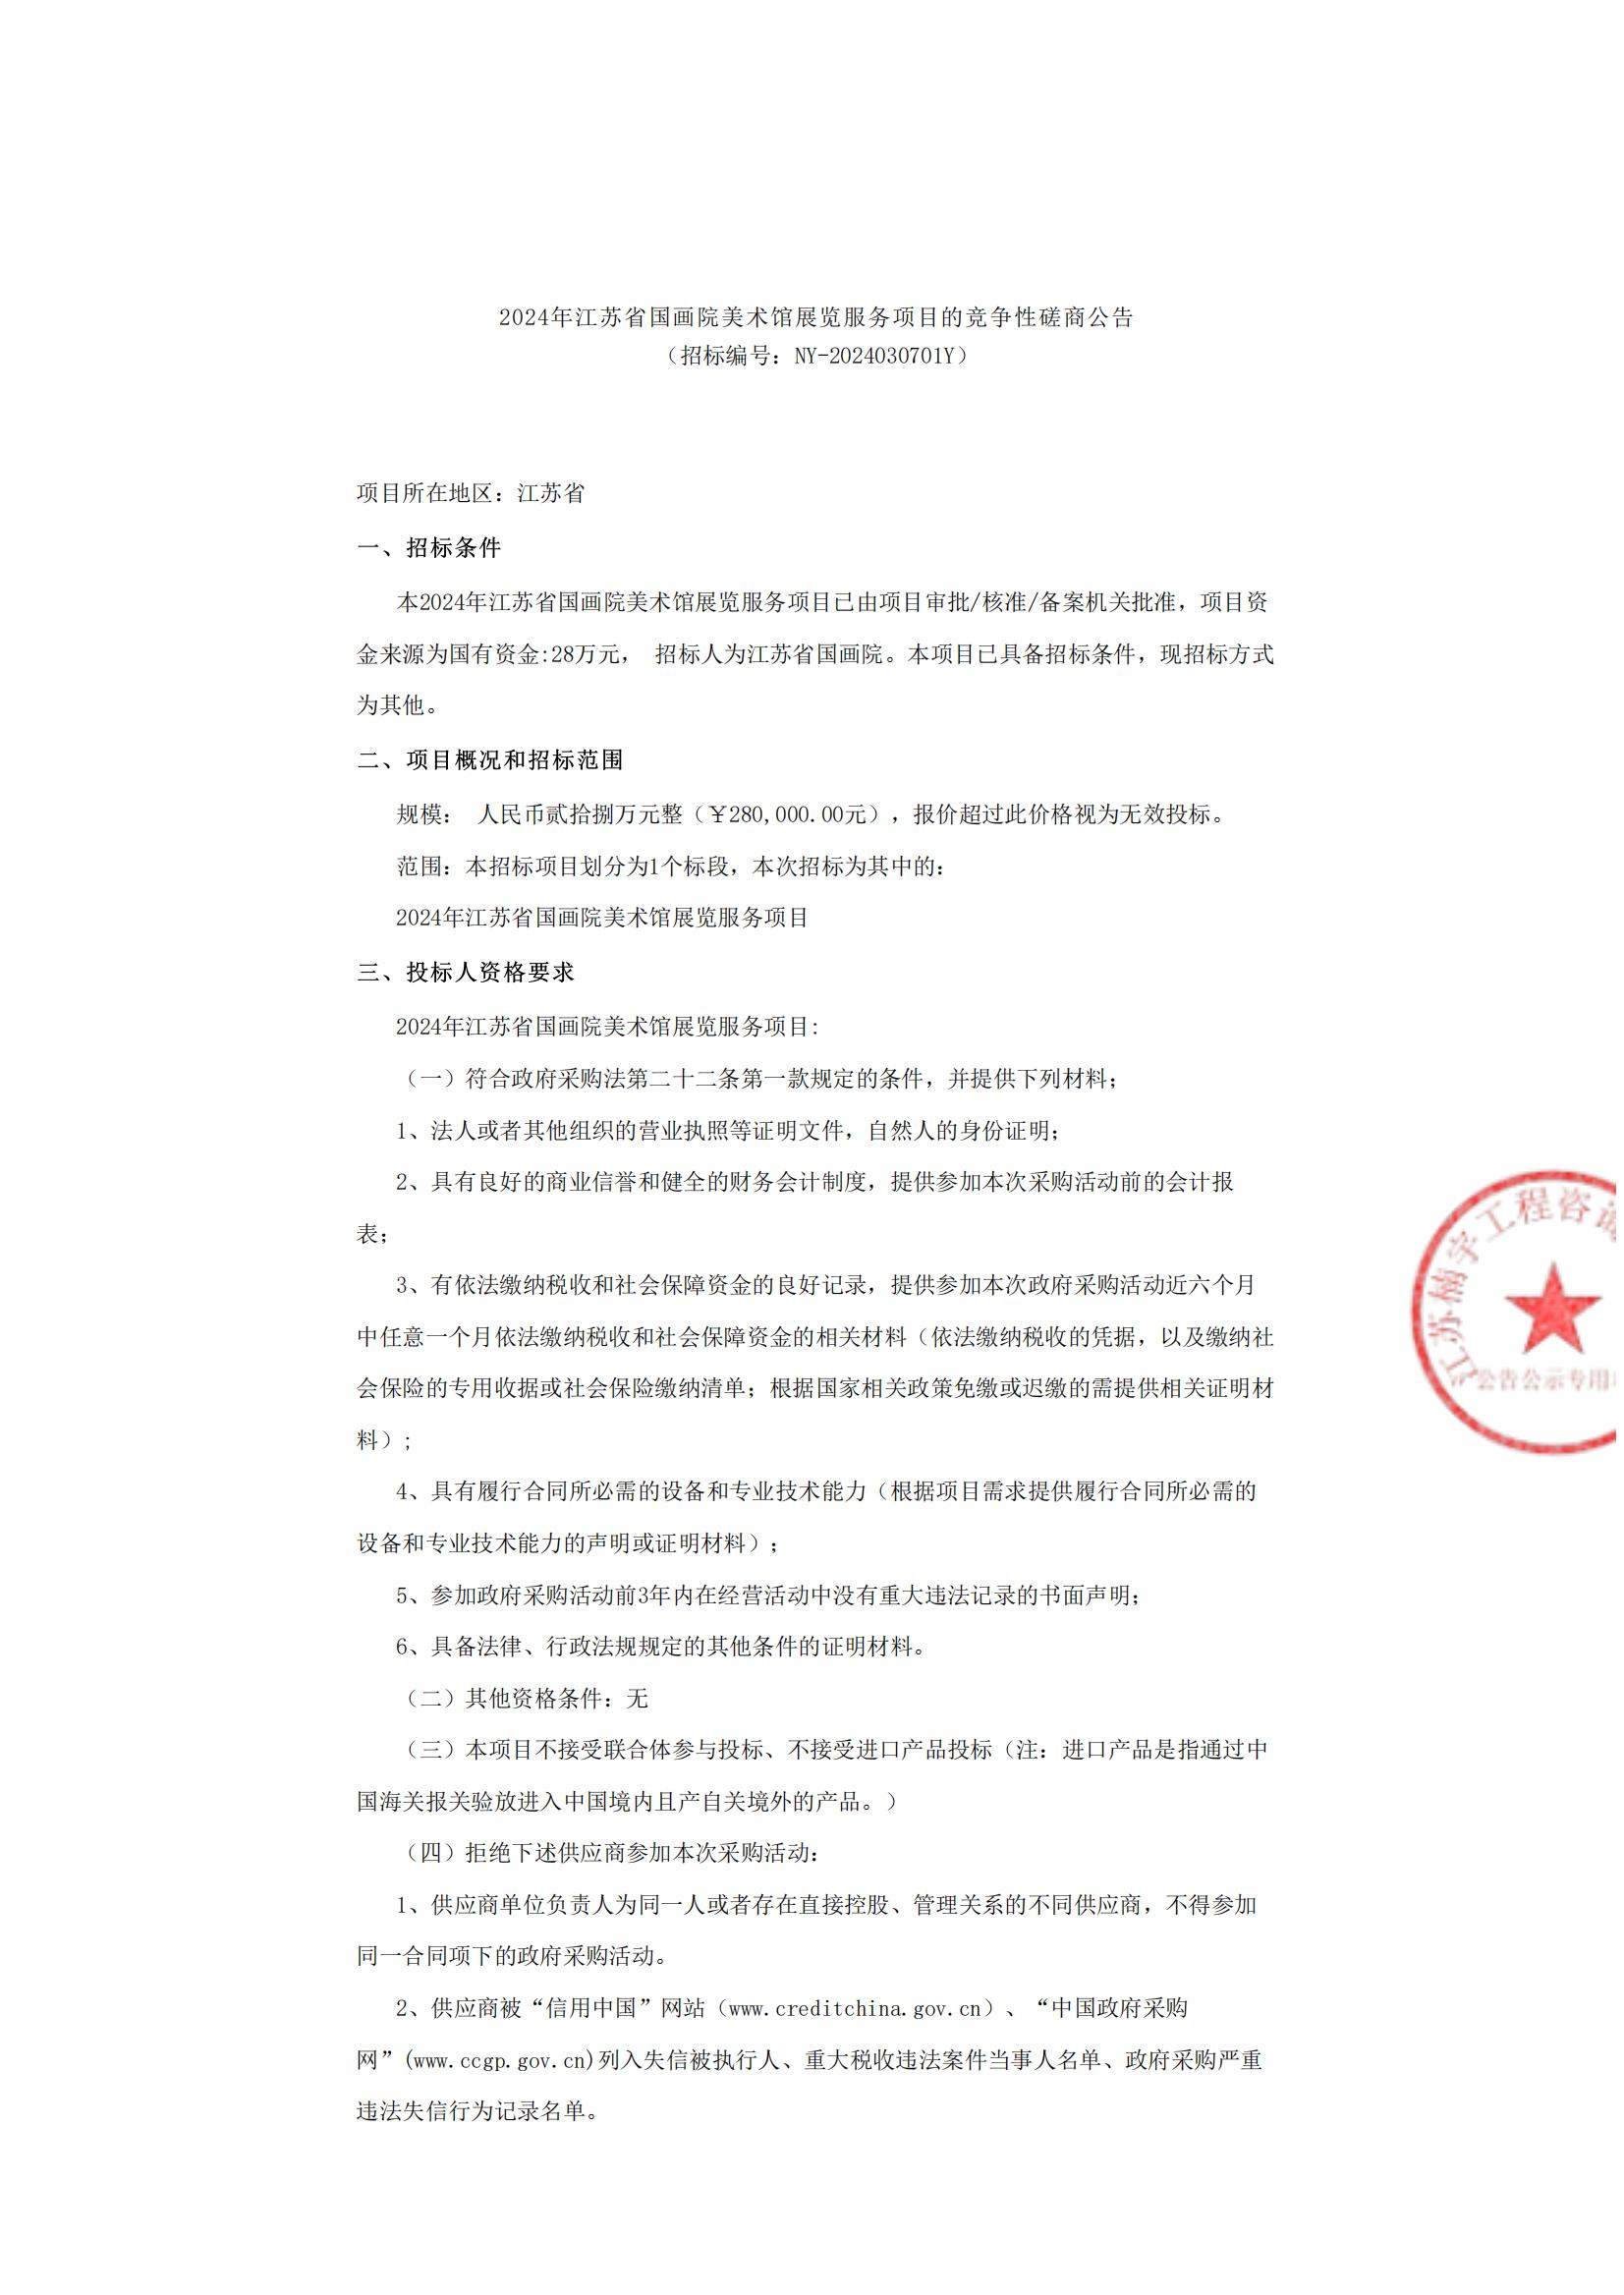 2024年江苏省国画院美术馆展览服务项目的竞争性磋商公告_00.jpg